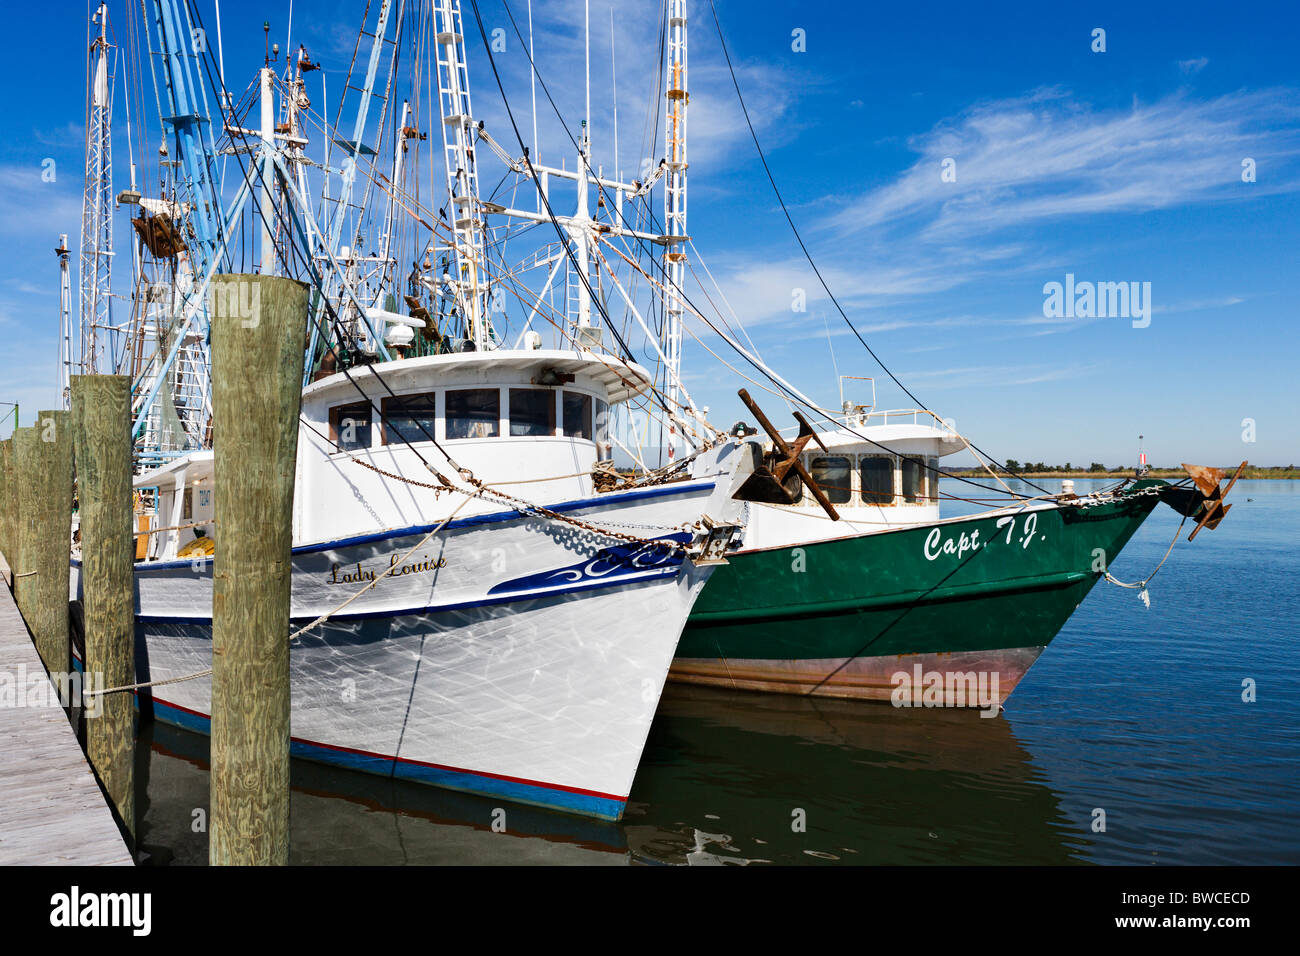 Le navi per la pesca a strascico ormeggiata in porto sul fiume Apalachicola, Apalachicola, costa del Golfo della Florida, Stati Uniti d'America Foto Stock